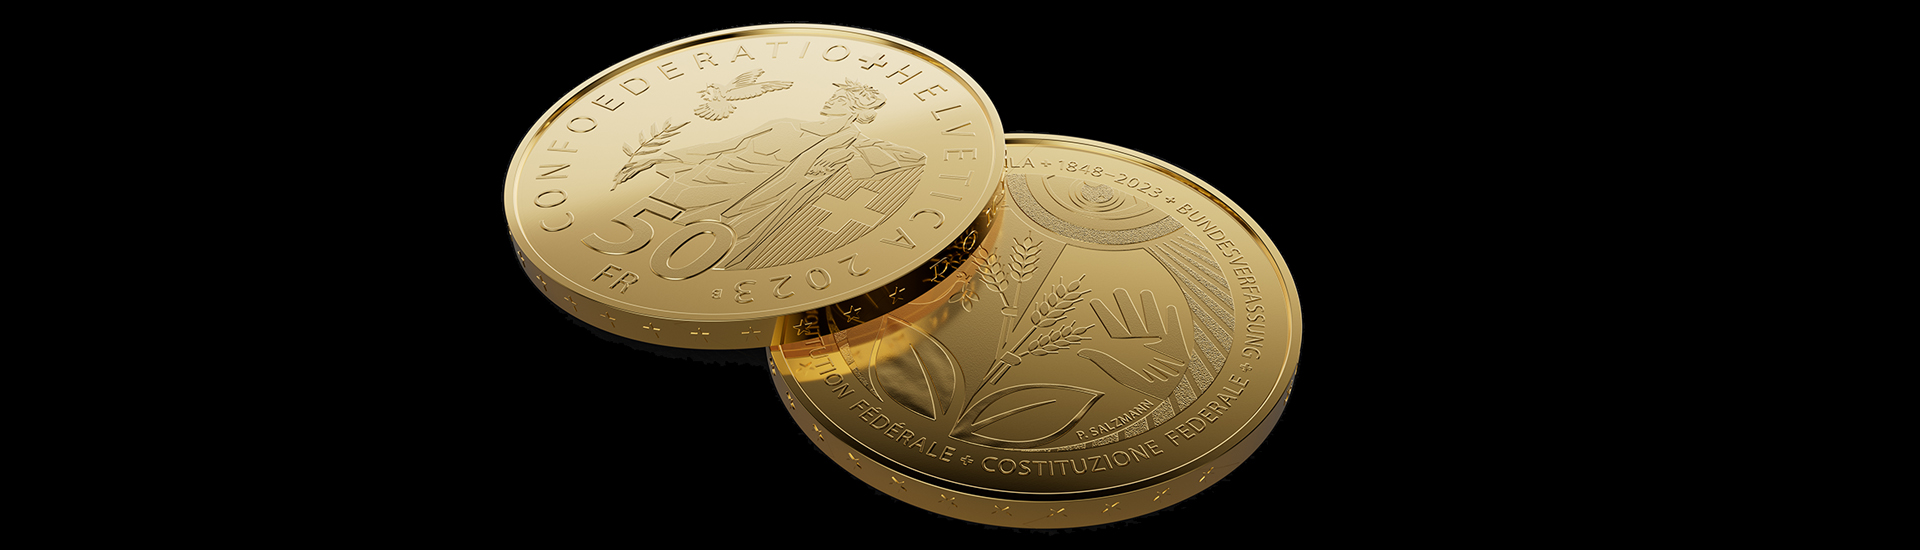 175 Jahre Bundesverfassung Goldmünze